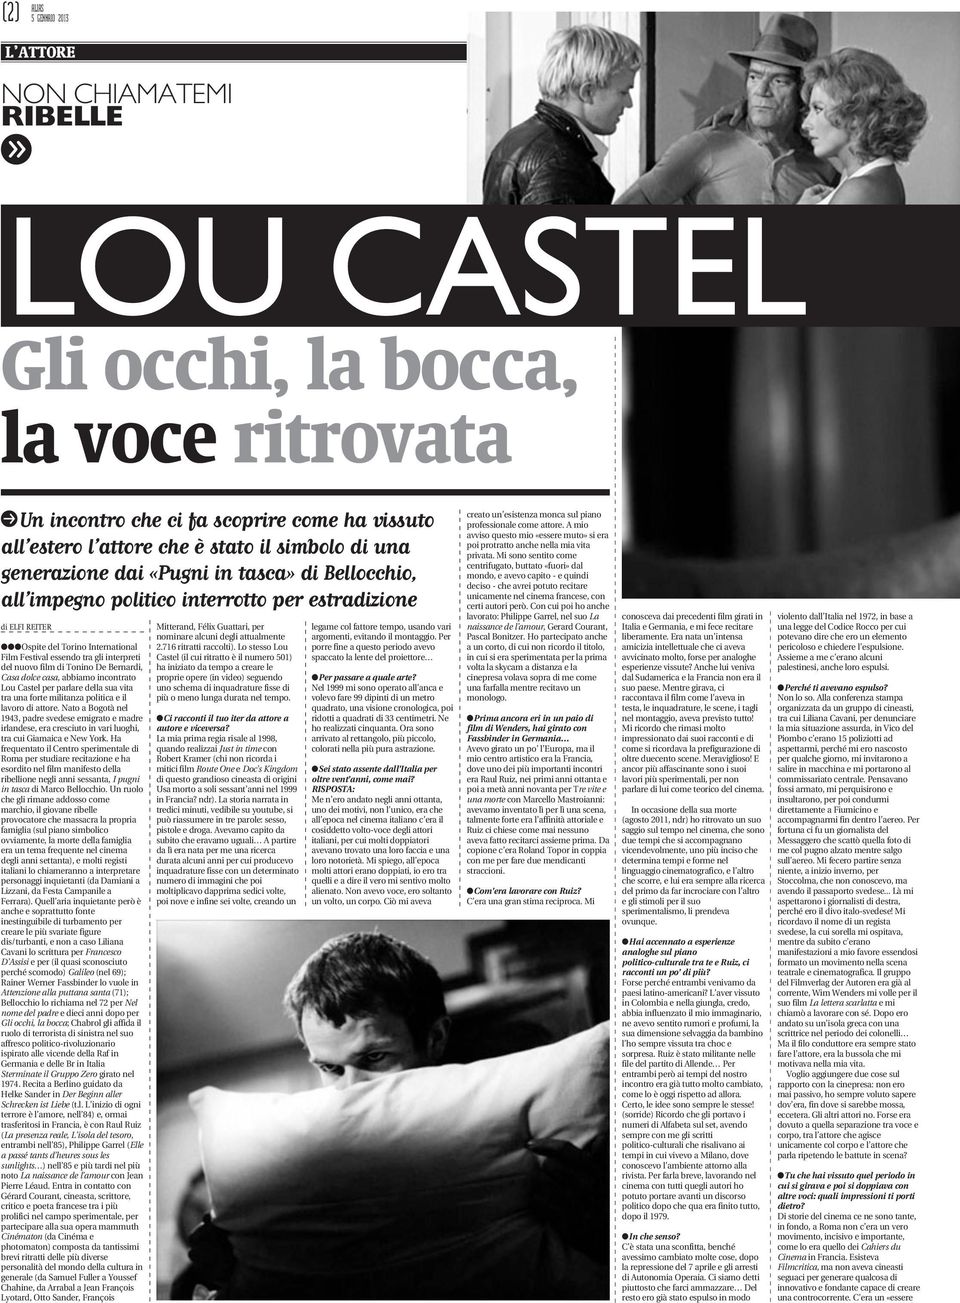 di Tonino De Bernardi, Casa dolce casa, abbiamo incontrato Lou Castel per parlare della sua vita tra una forte militanza politica e il lavoro di attore.